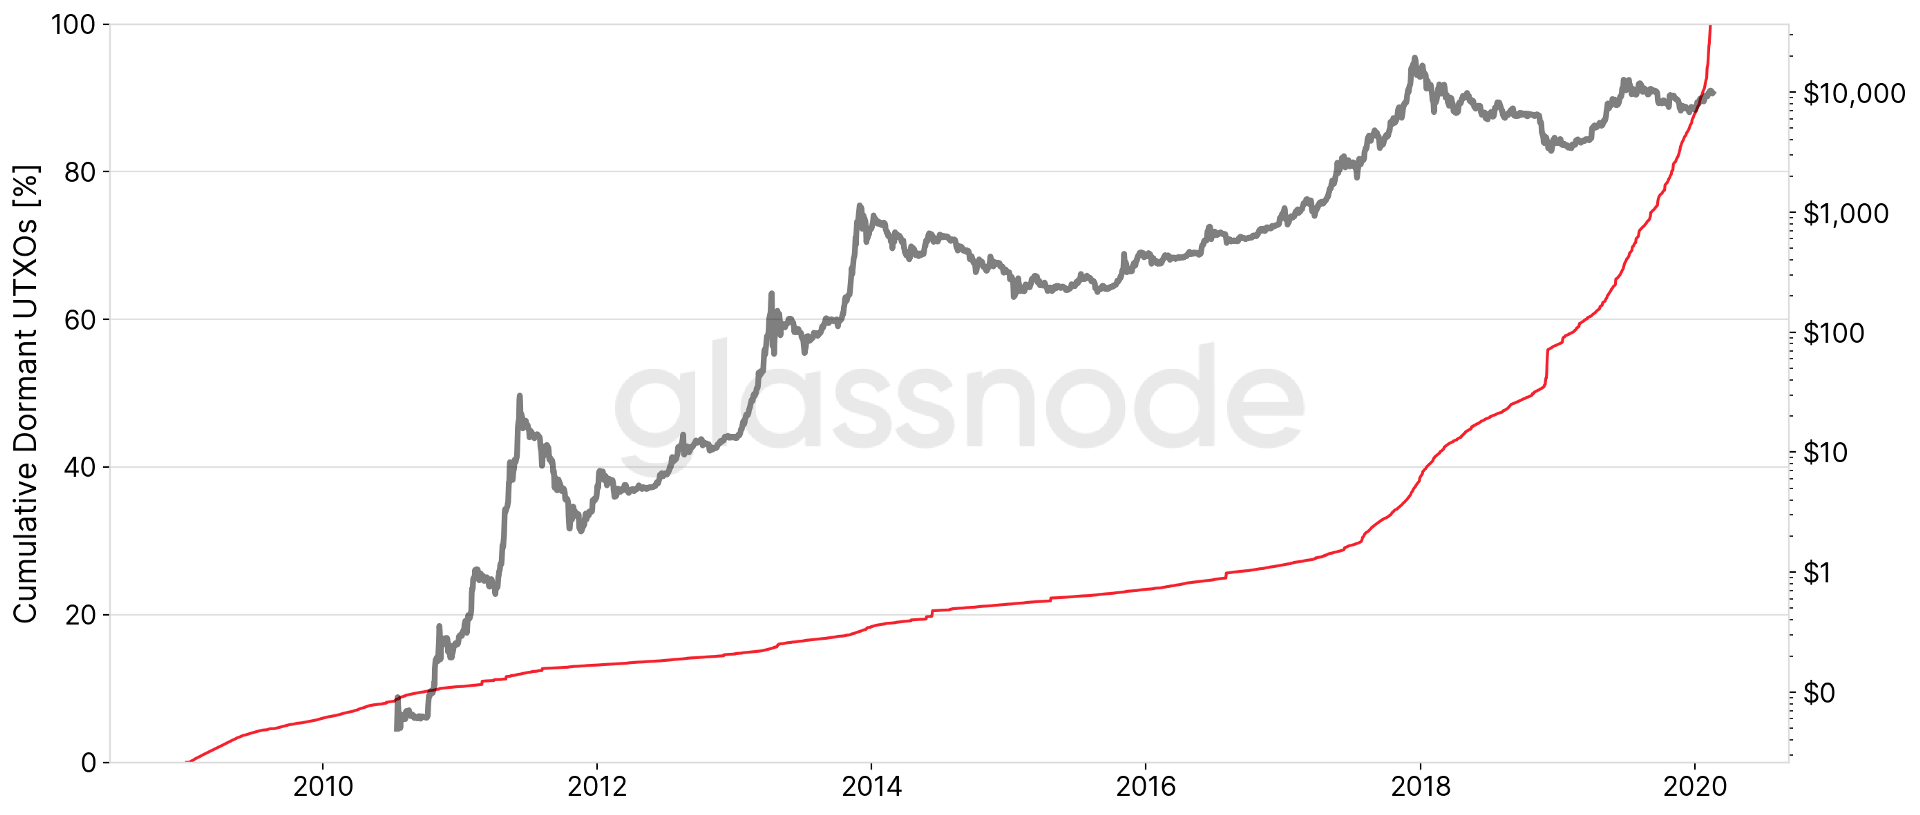 Les `` mains d'acier '' de la BTC - 37% de l'offre de Bitcoin n'a pas bougé depuis 2017, 55% au ralenti après le bas de 2018